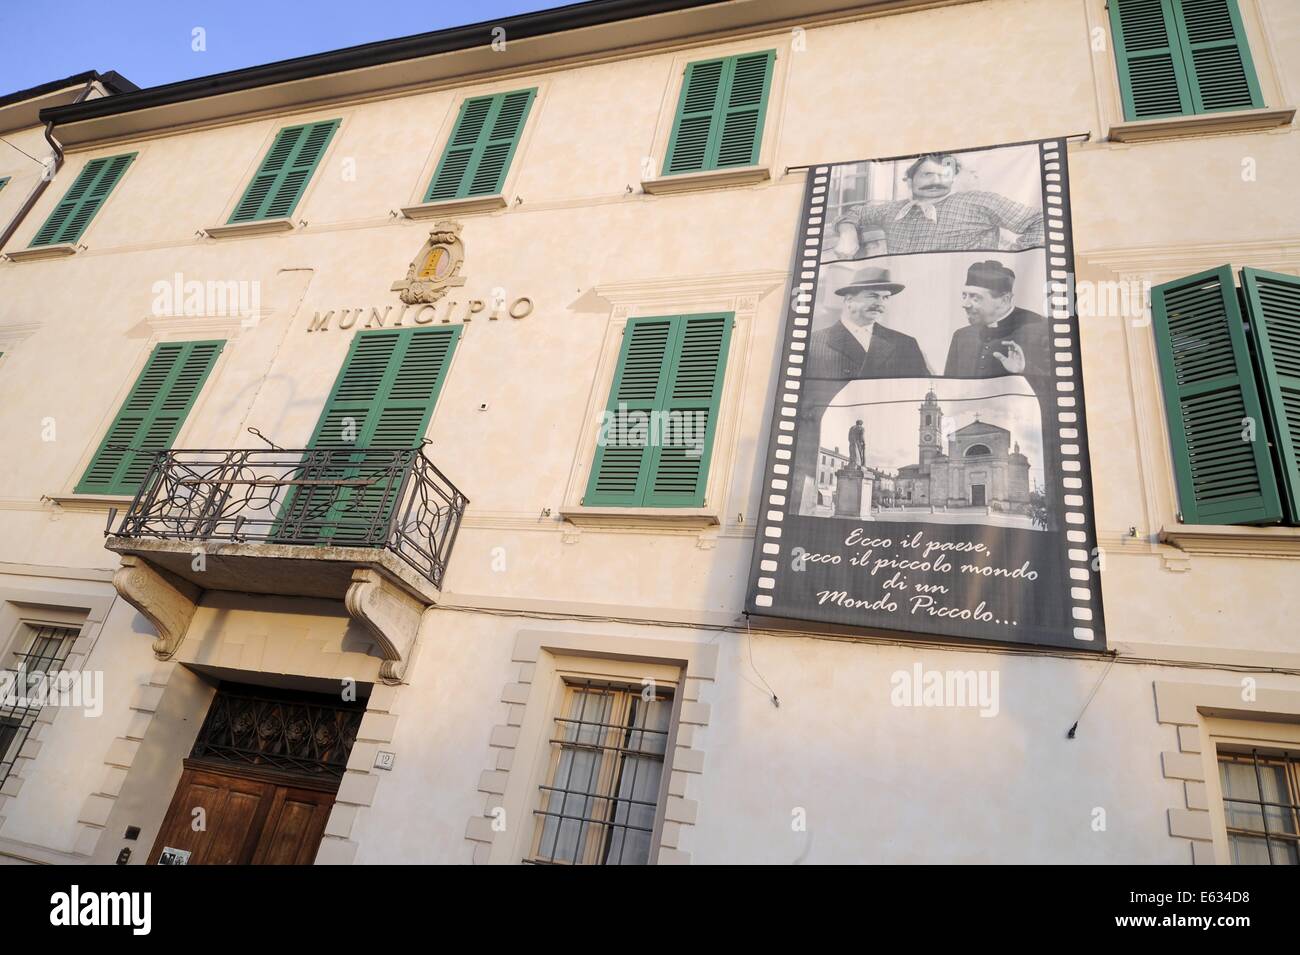 Brescello (Reggio Emilia), the town hall with the poster of Don Camillo and Peppone movies Stock Photo